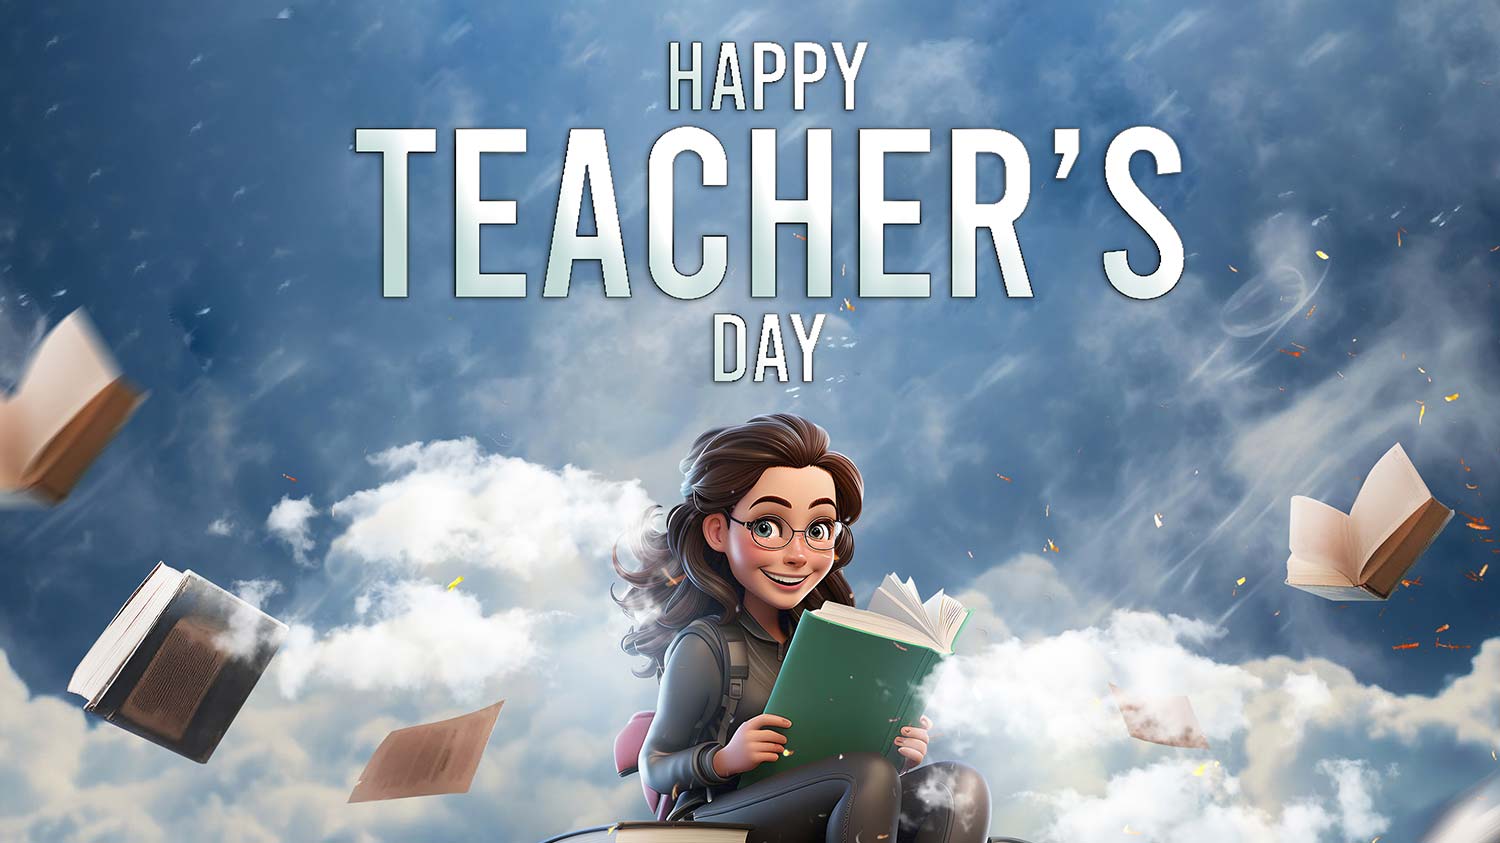 پوستر یک دختر در آسمان در حال مطالعه برای تبریک روز معلم